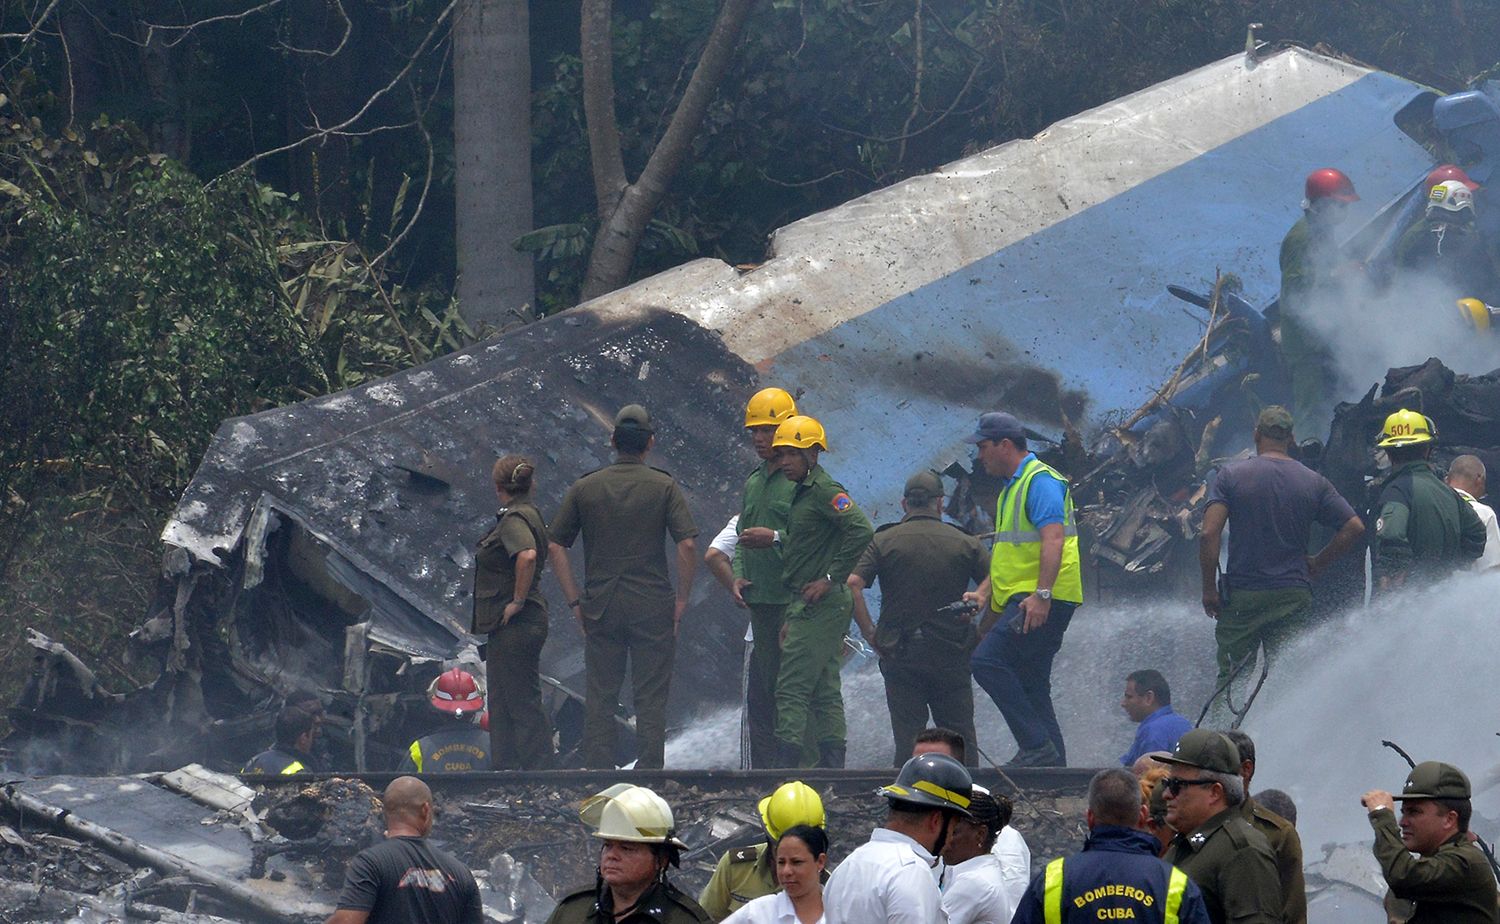 Aumenta a 110 el número de muertos en accidente aéreo en Cuba, confirman autoridades